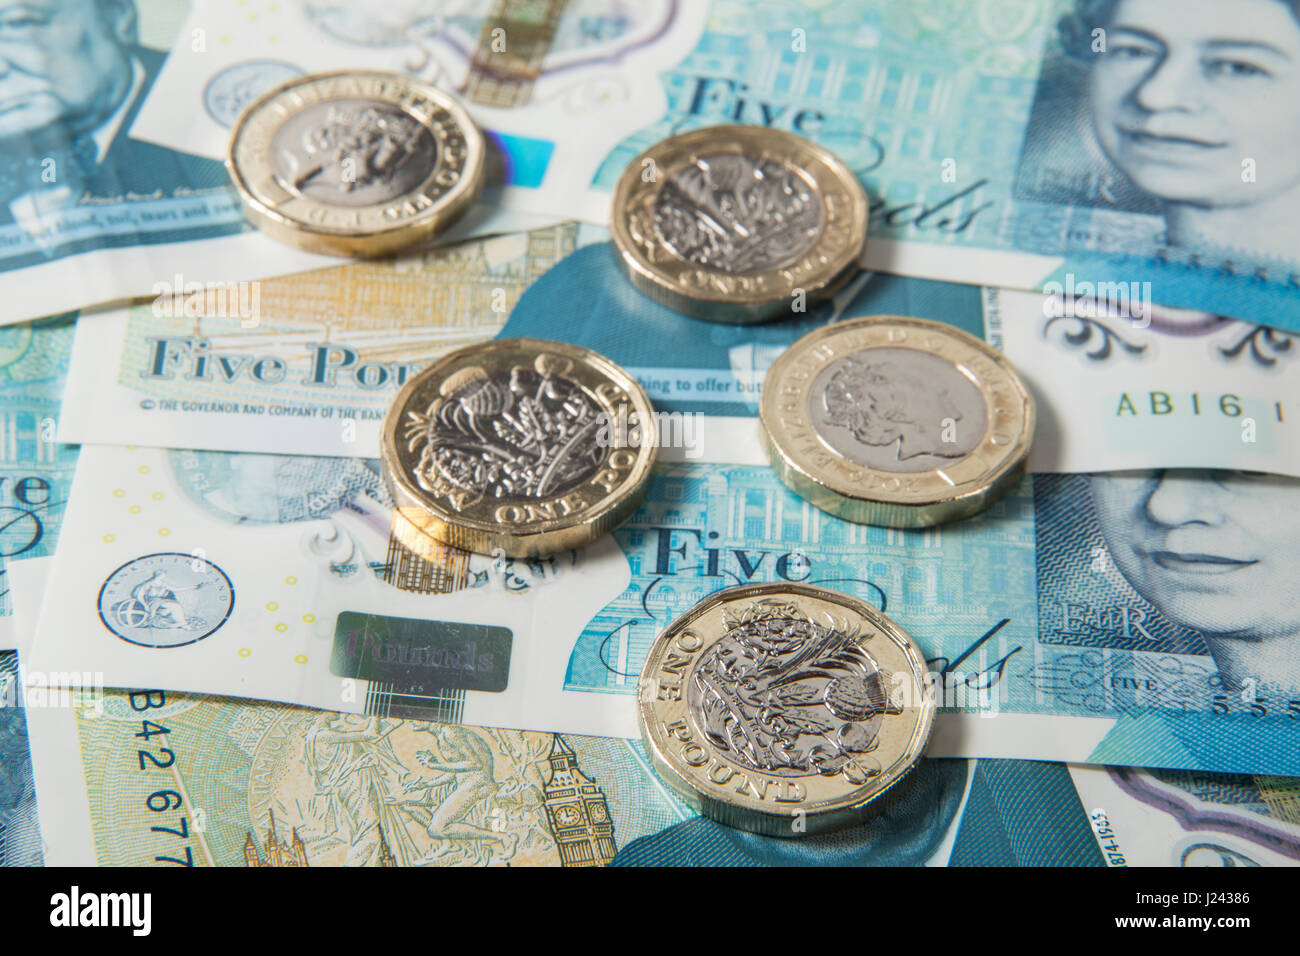 Las nuevas monedas de 1 libras británicas sobre un fondo de UK £5 libras notas Foto de stock